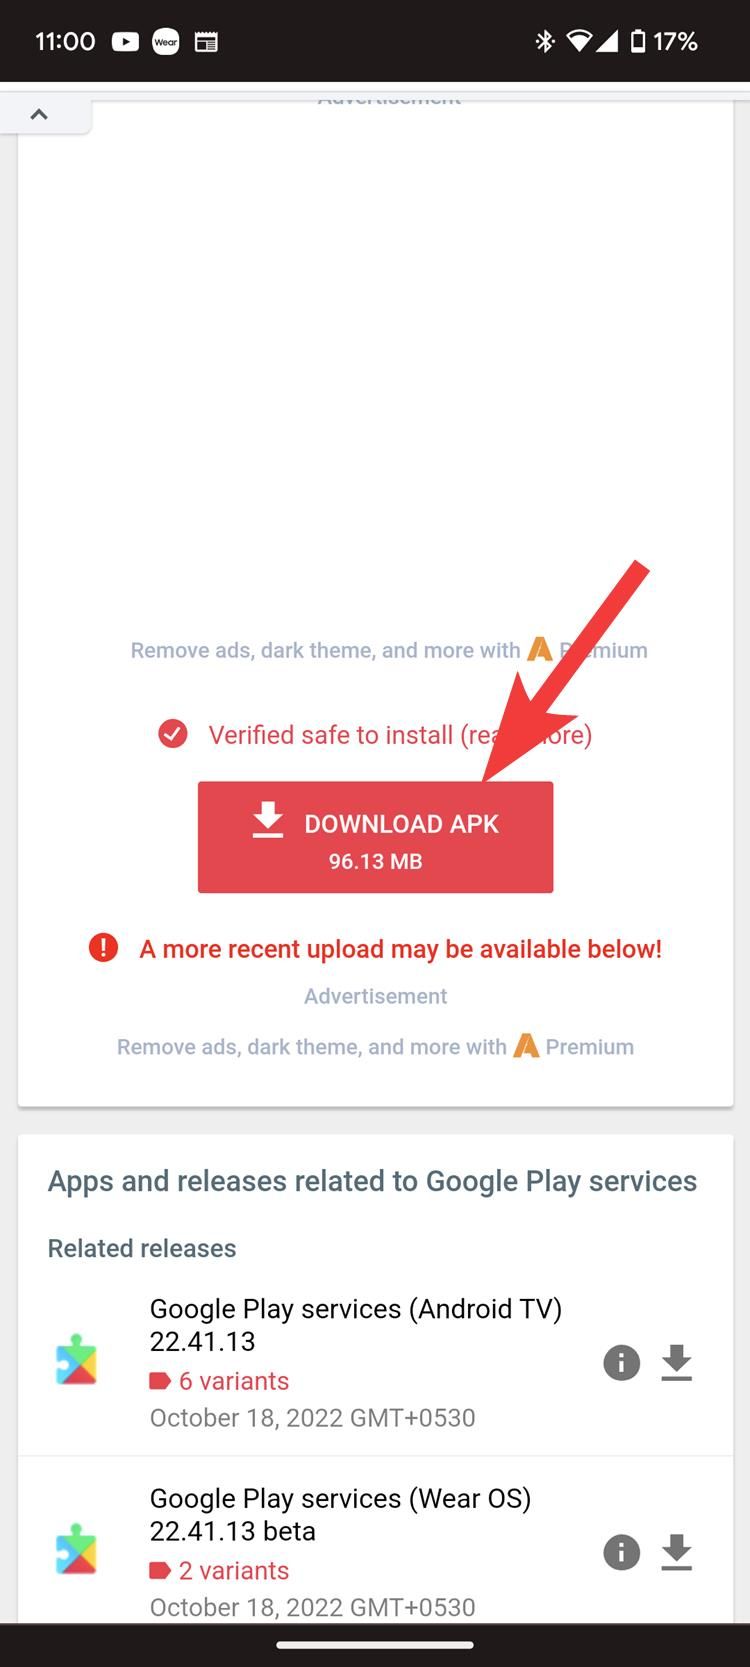 Tocar no botão Baixar APK para baixar a versão mais recente do Google Play Service no APKMirror